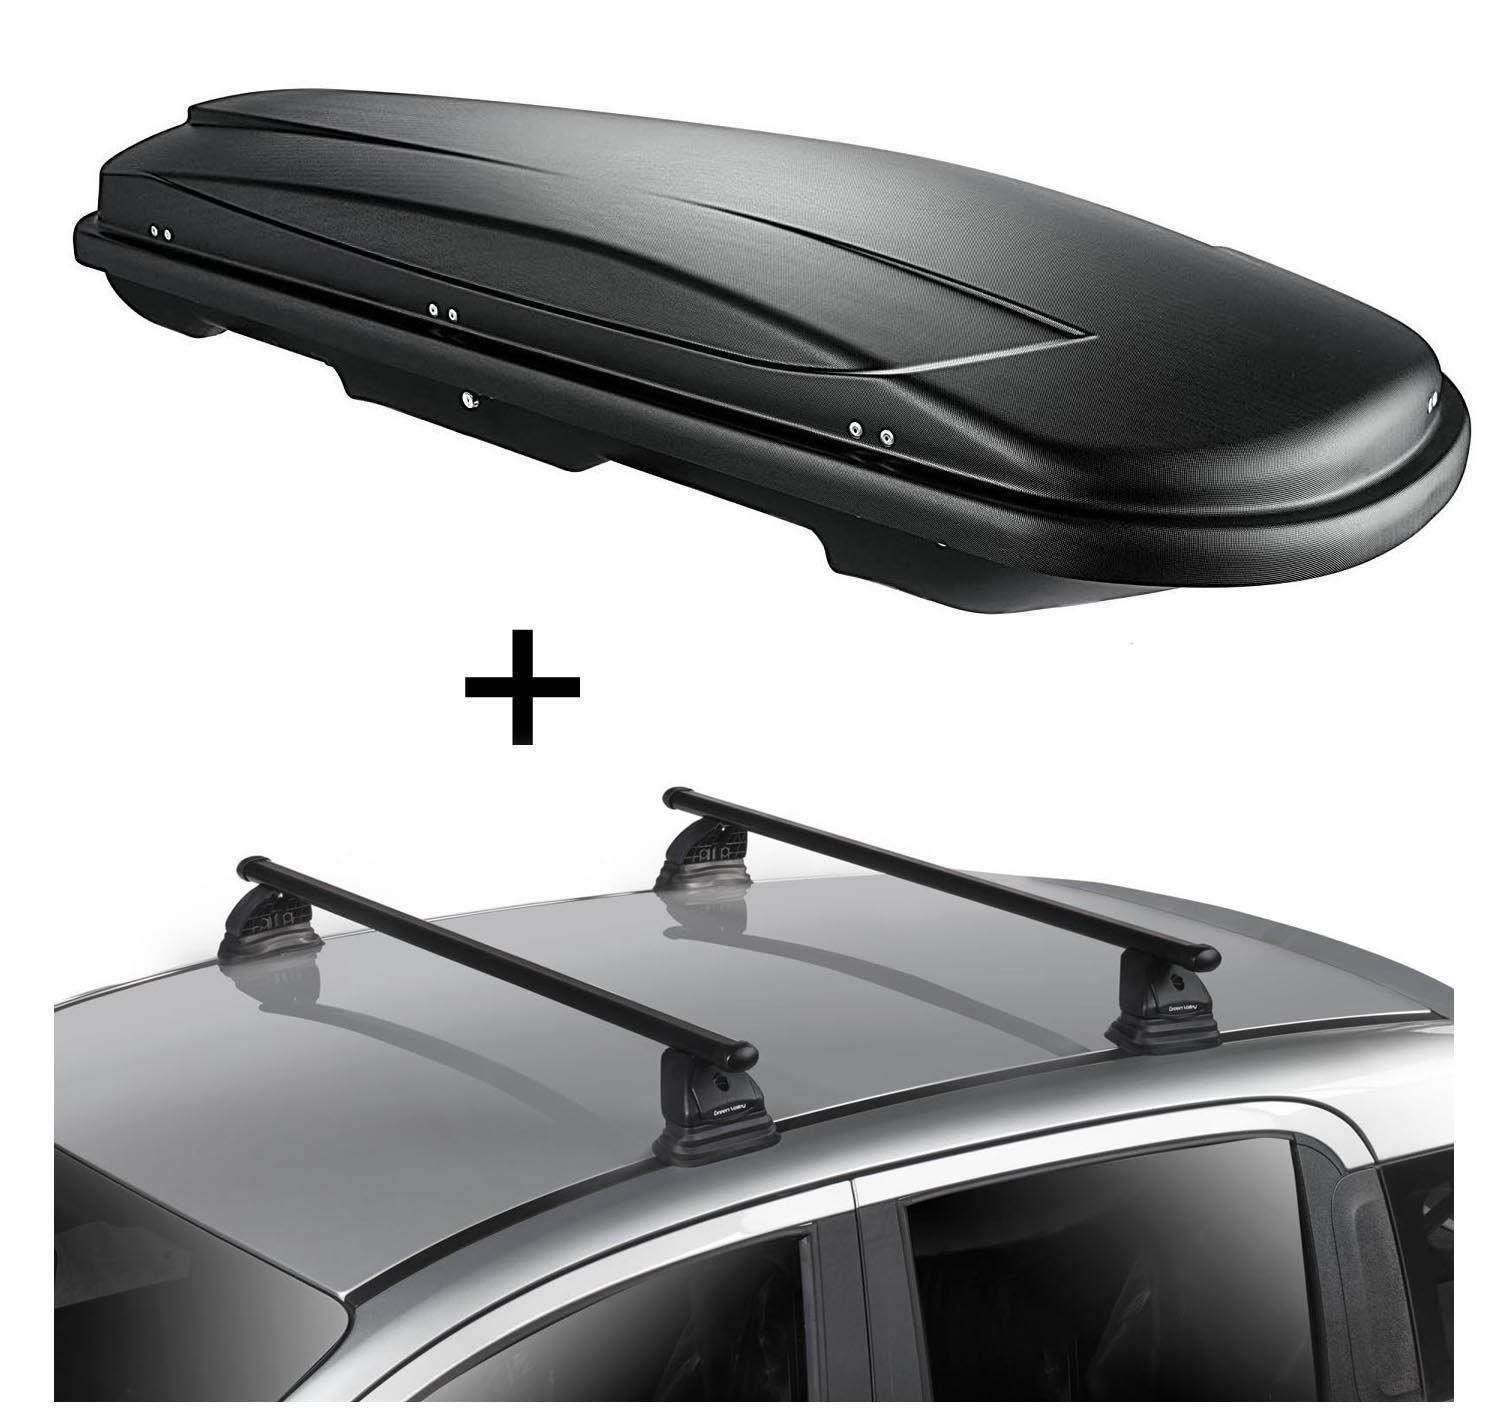 VDP Dachbox, Dachbox VDPJUXT600 600 Liter abschließbar + Dachträger VDP EVO Stahl kompatibel mit Volkswagen Caddy IV 3-5 Türer ab 2015